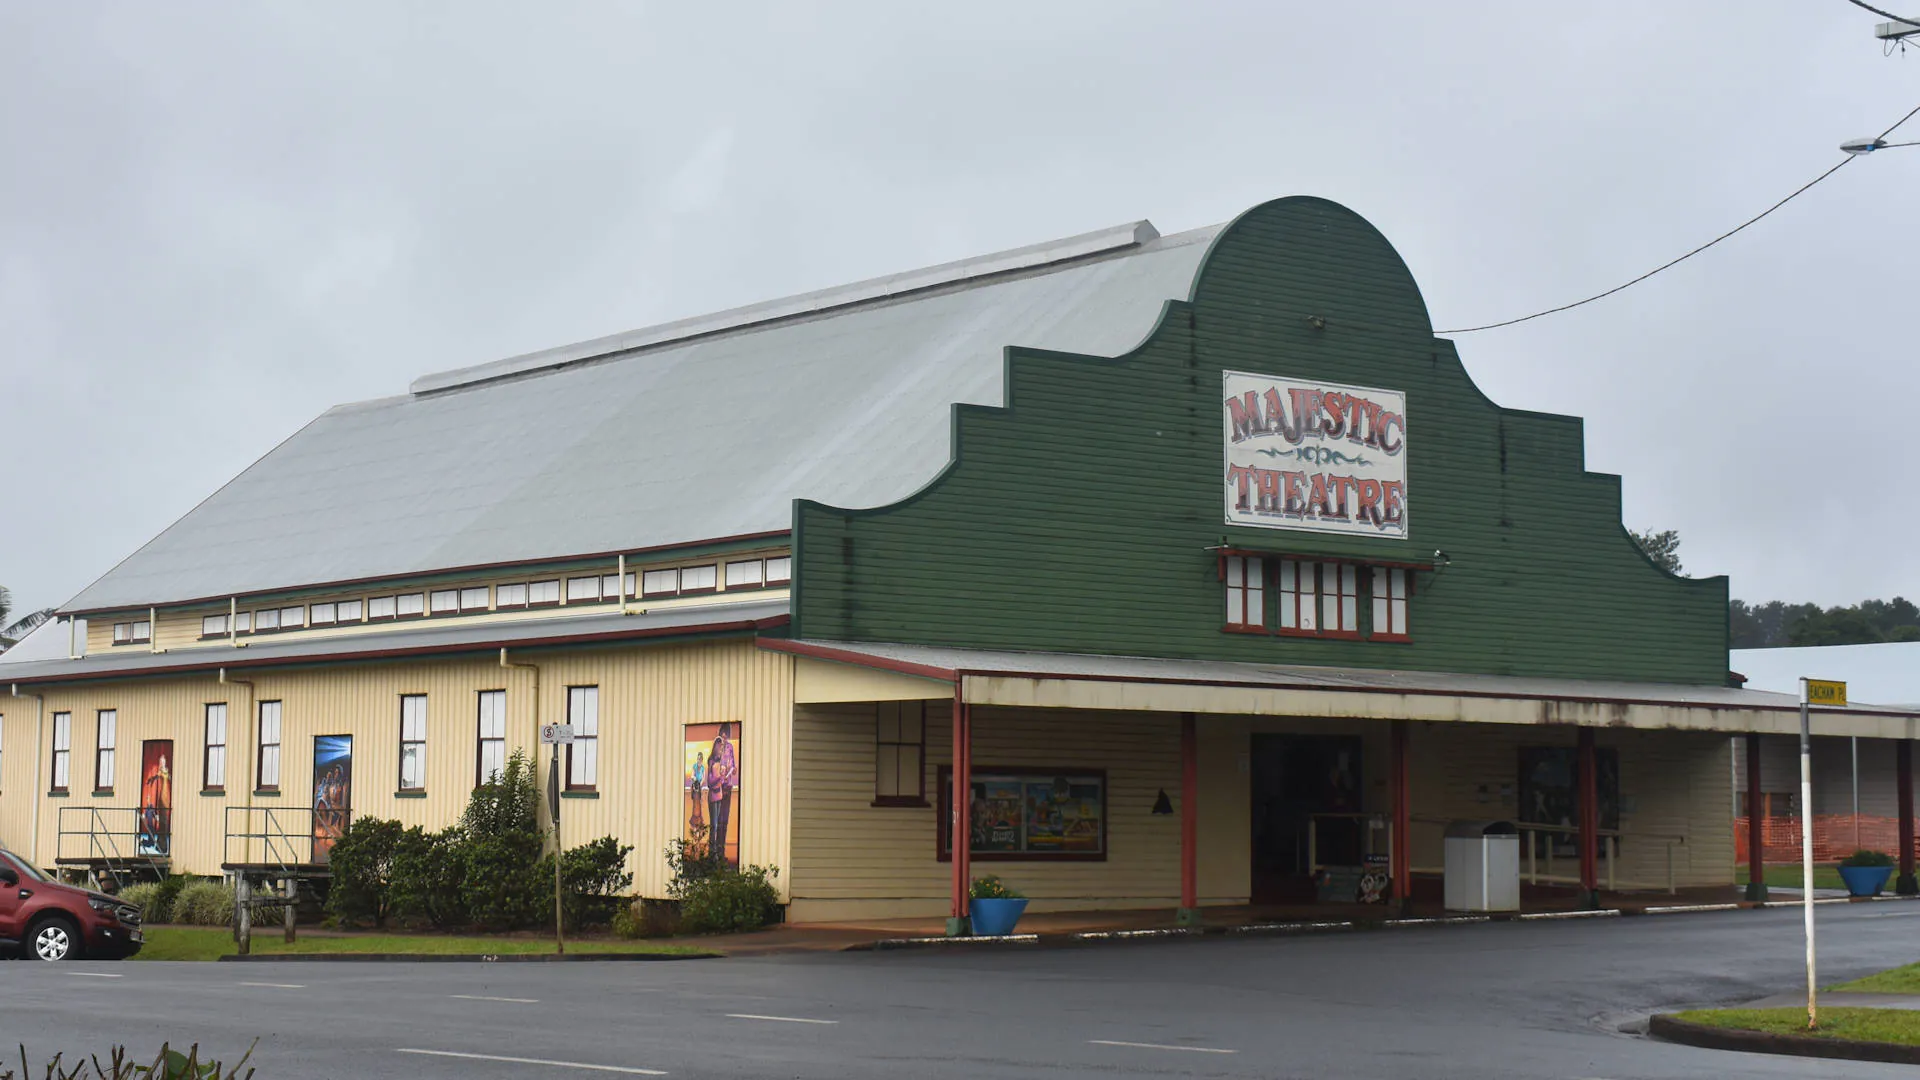 Australia's Longest Continually Operating Picture Theatre, Majestic Theatre in Malanda